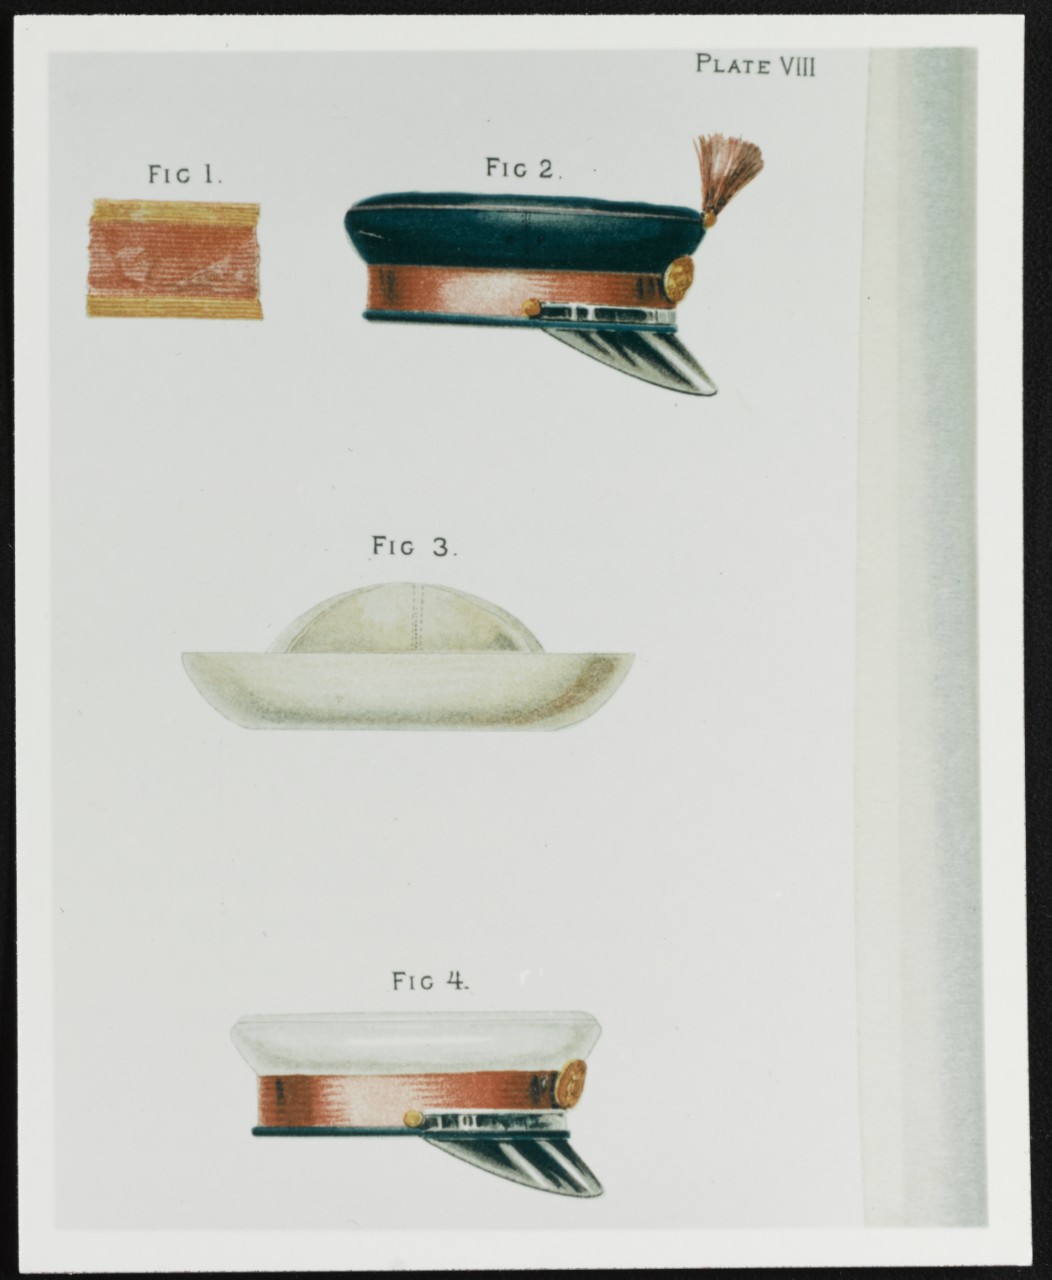 Hats and Caps. U.S. Naval Uniform Regulations 1886